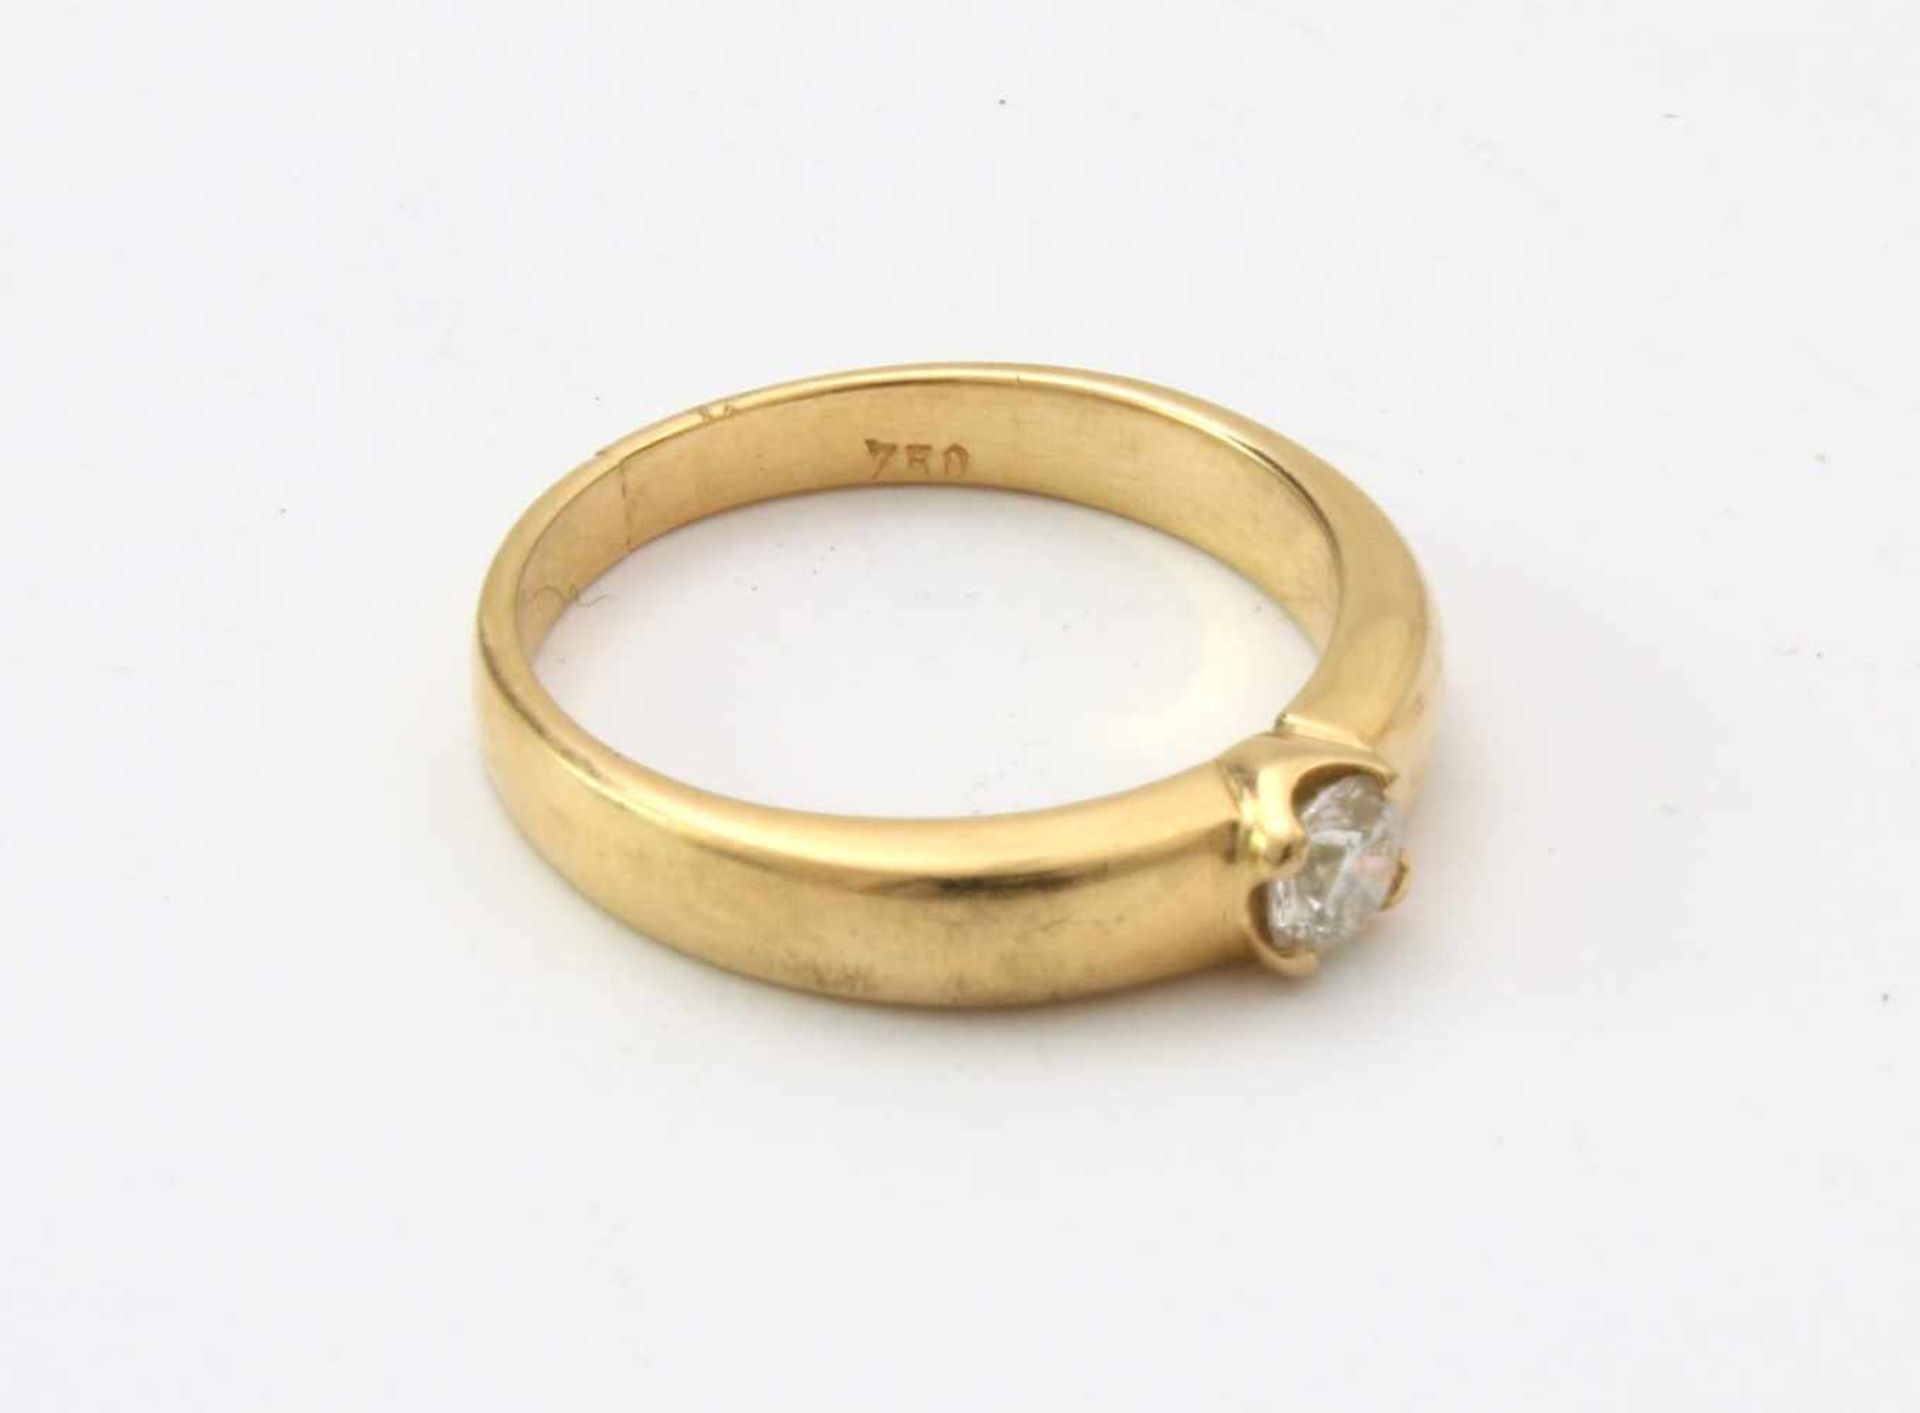 Gelbgold-Ring mit Brillant SolitärGG 750, Brillant Ø ca. 4mm - errechnet 0,23 ct., gute Qualität,